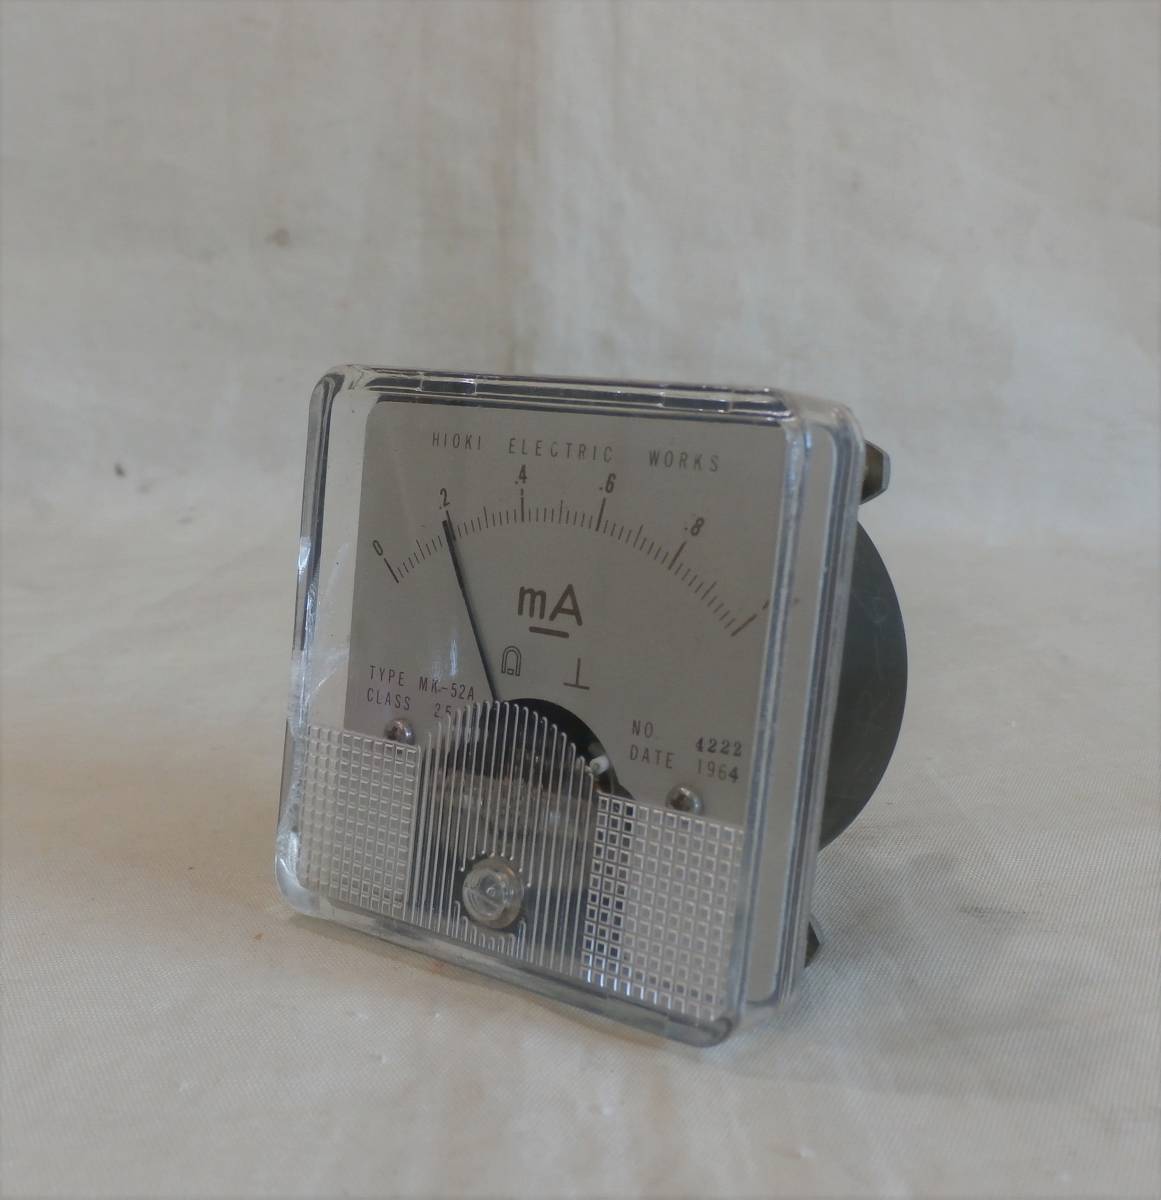  день . электрический. измерительный прибор MK-52A аналог измерительный прибор прямоугольник времена предмет Junk лот день .. измеритель аналог 